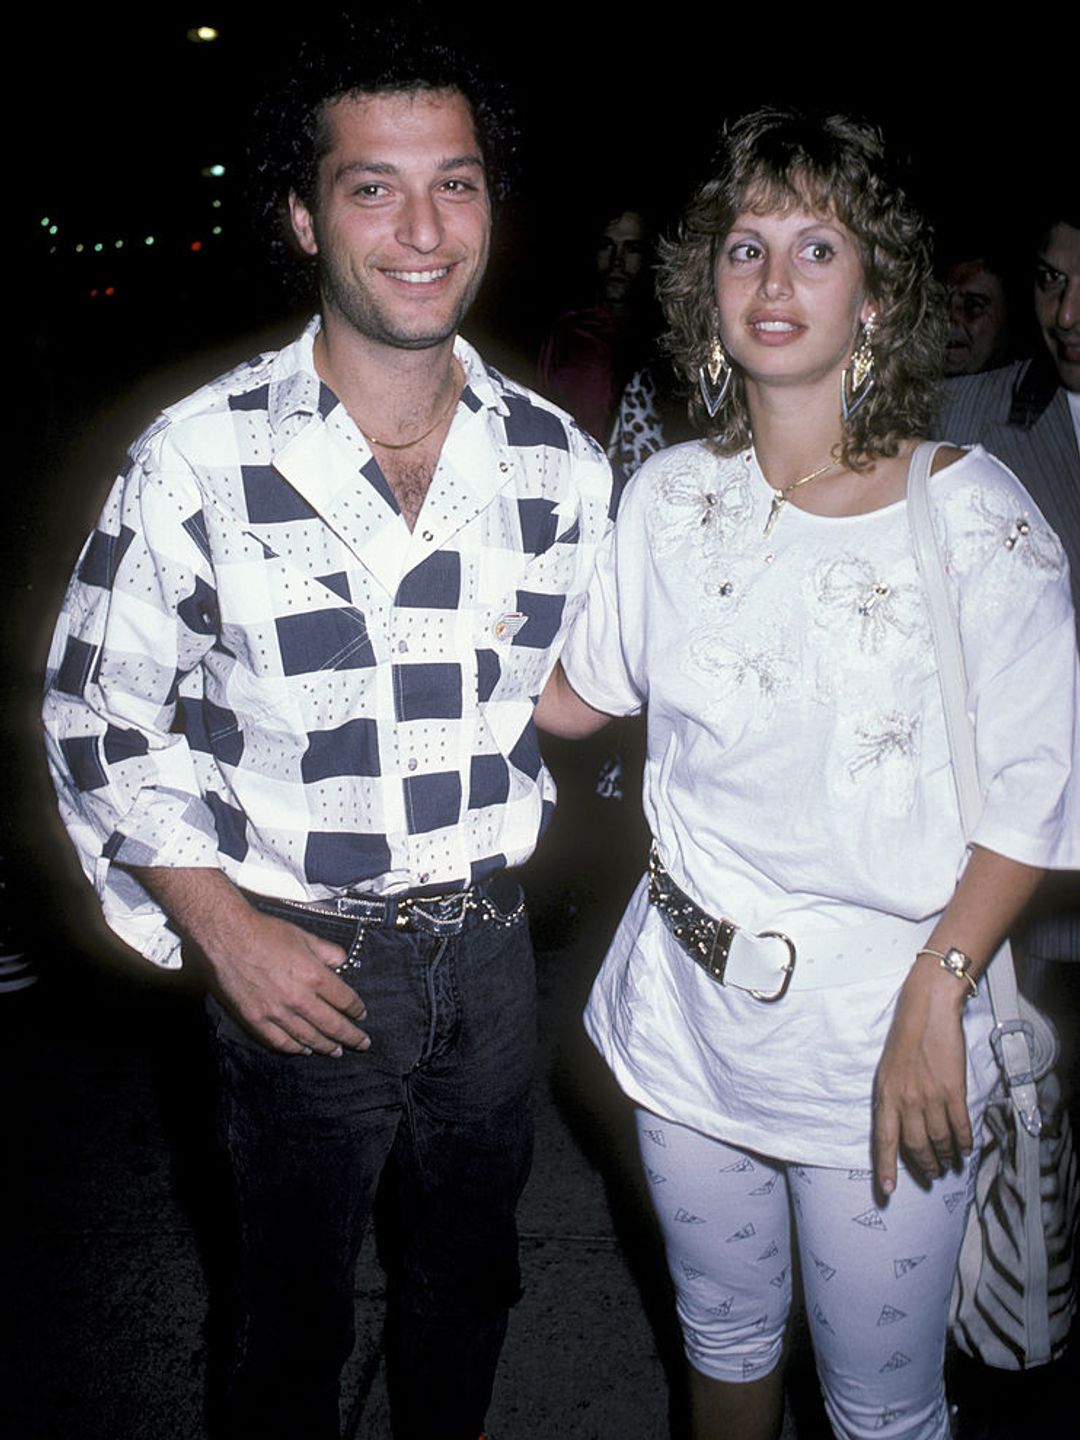 Howie et Terry photographiés à Hollywood en 1986